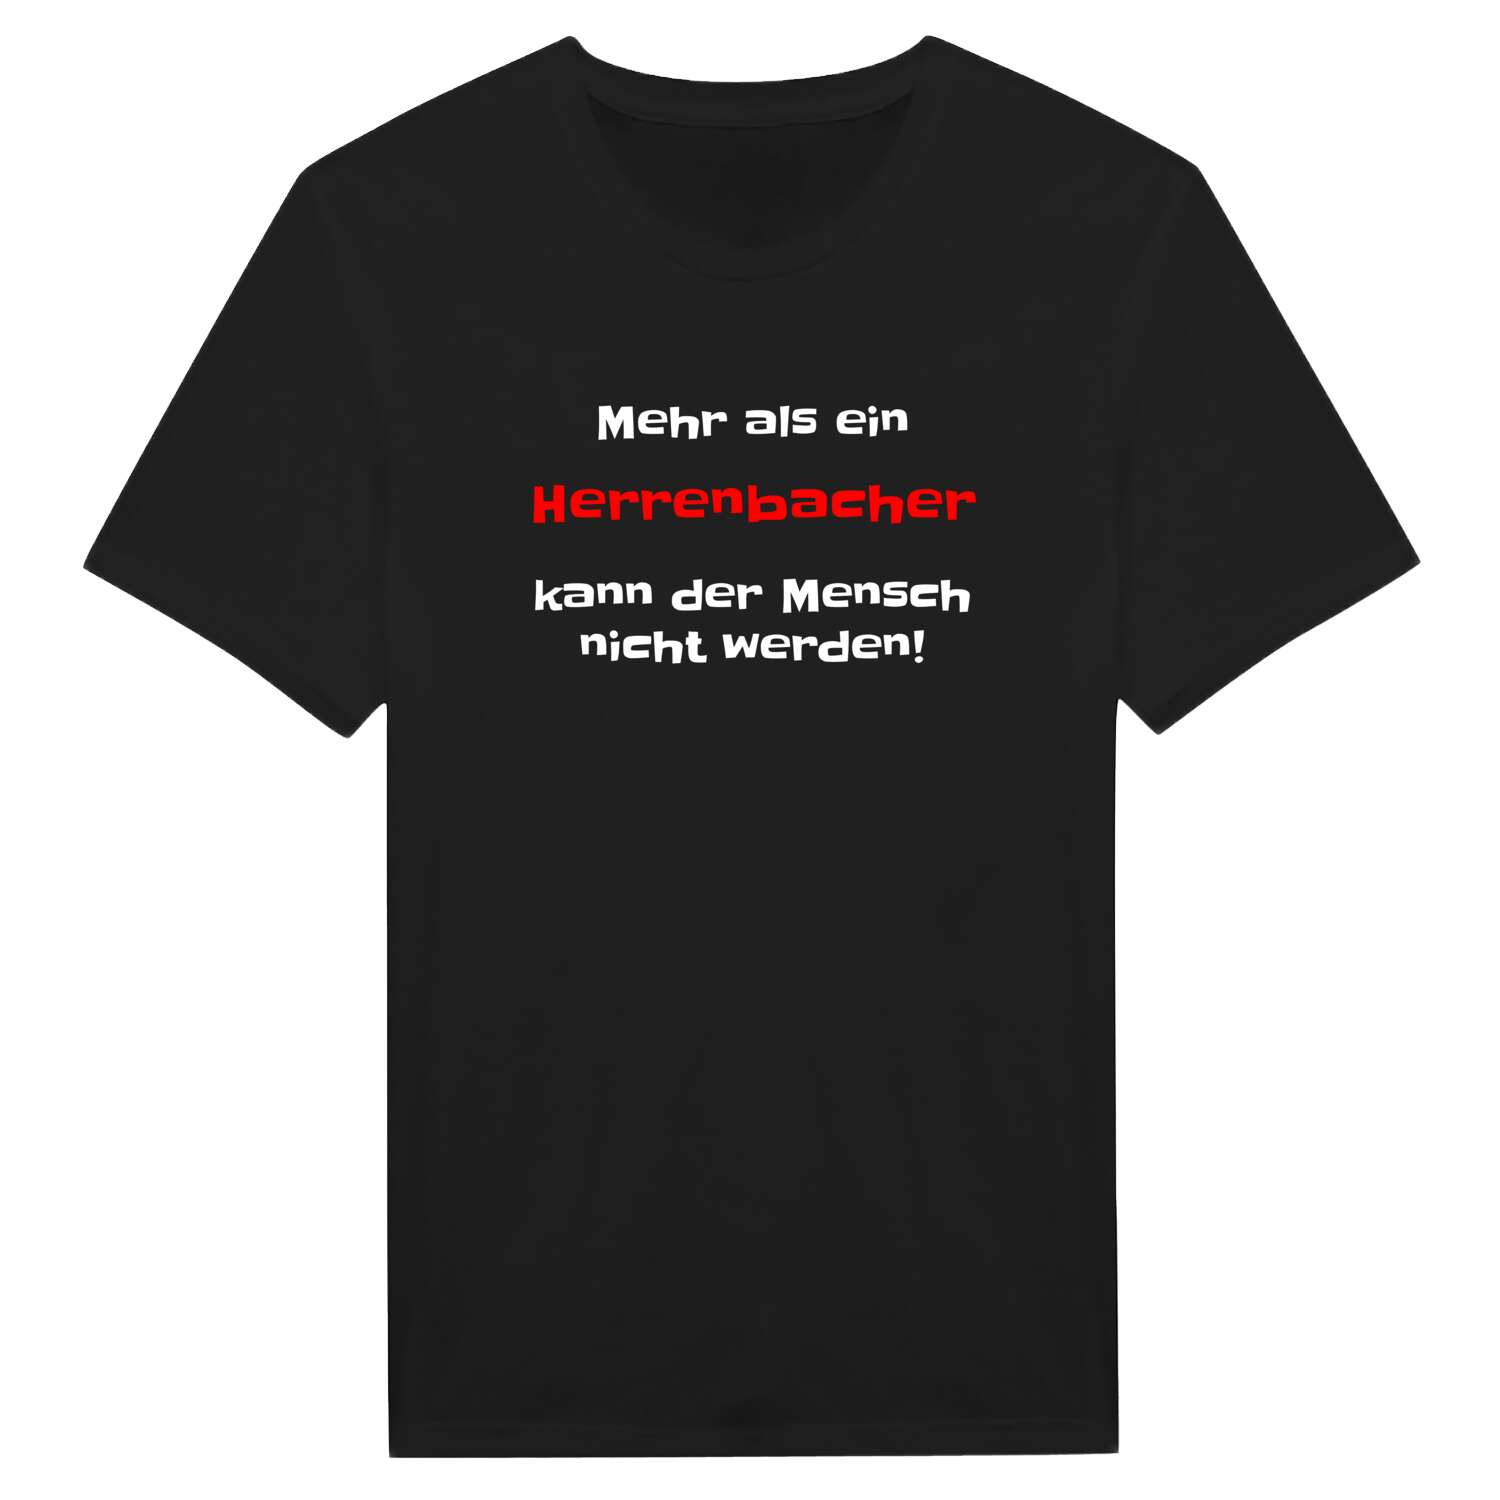 Herrenbach T-Shirt »Mehr als ein«